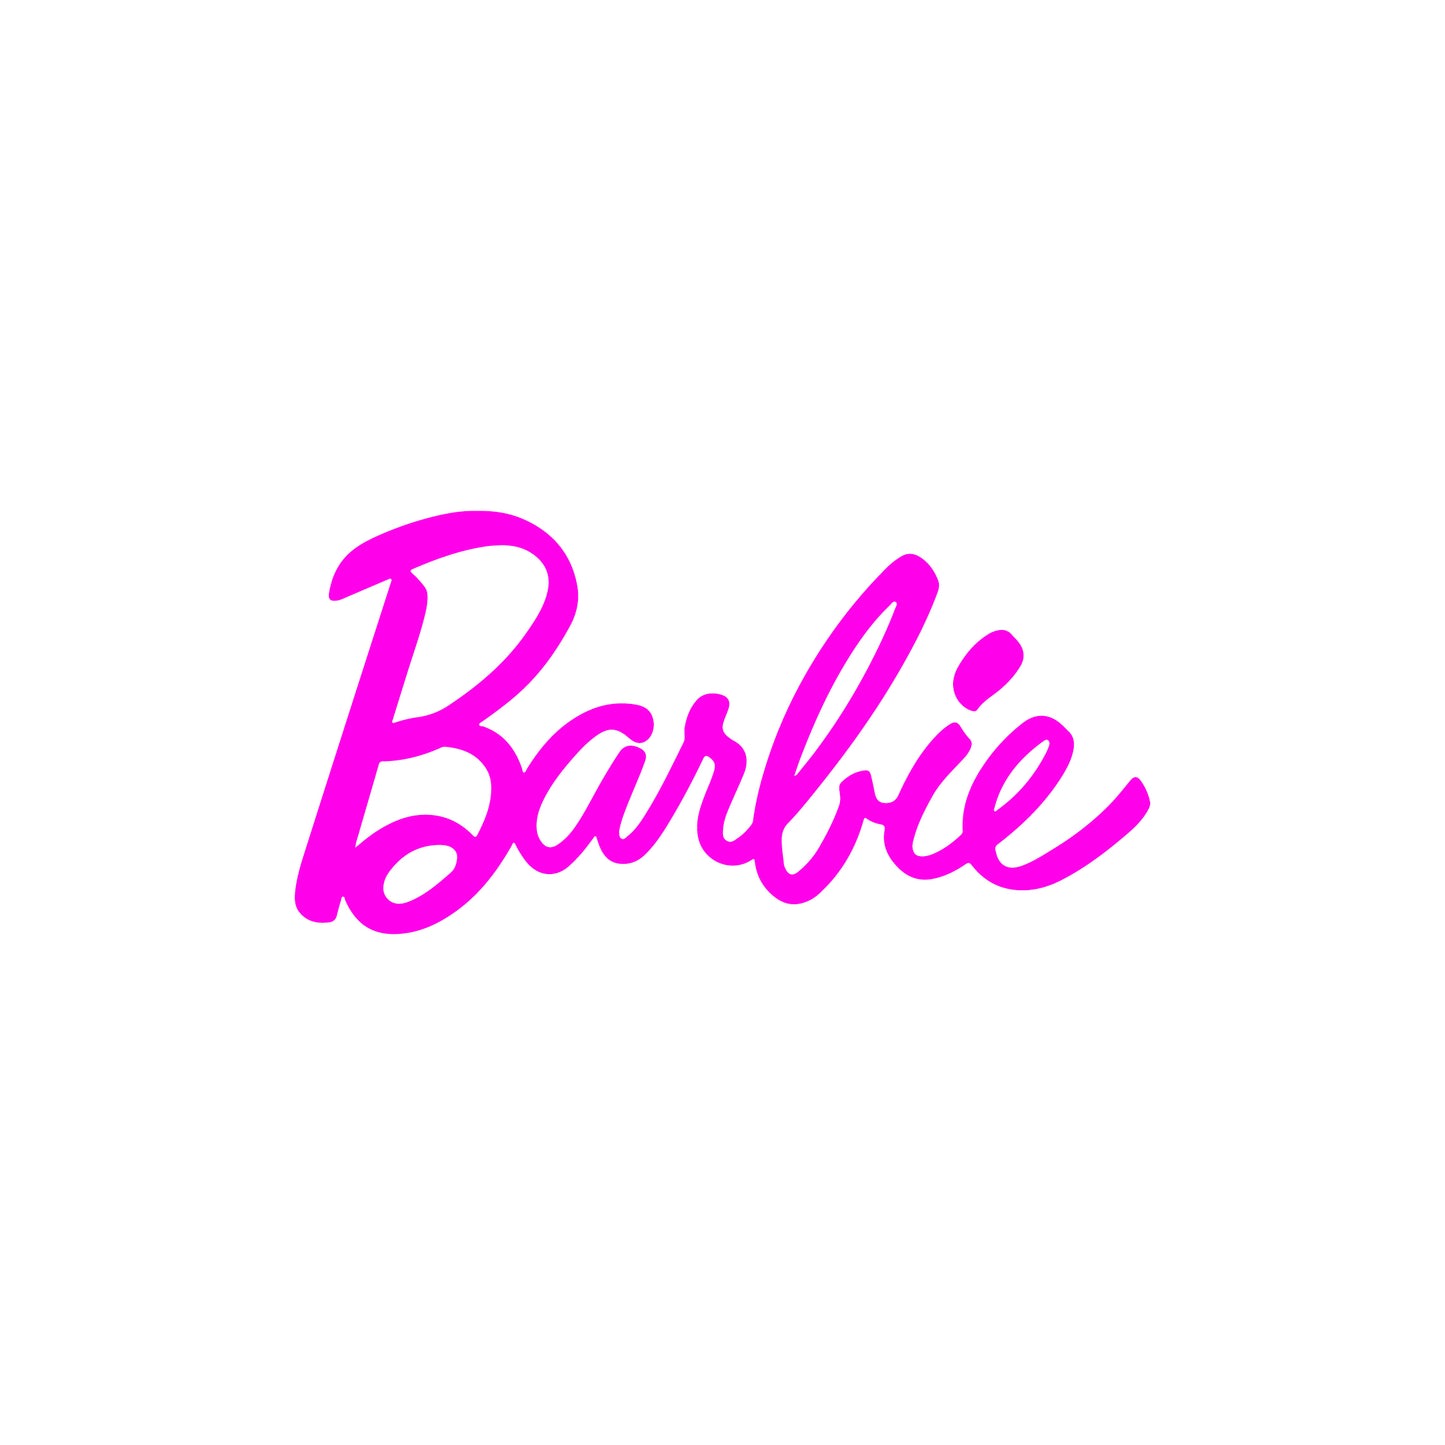 Barbie Text Vinyl Decal Sticker Design